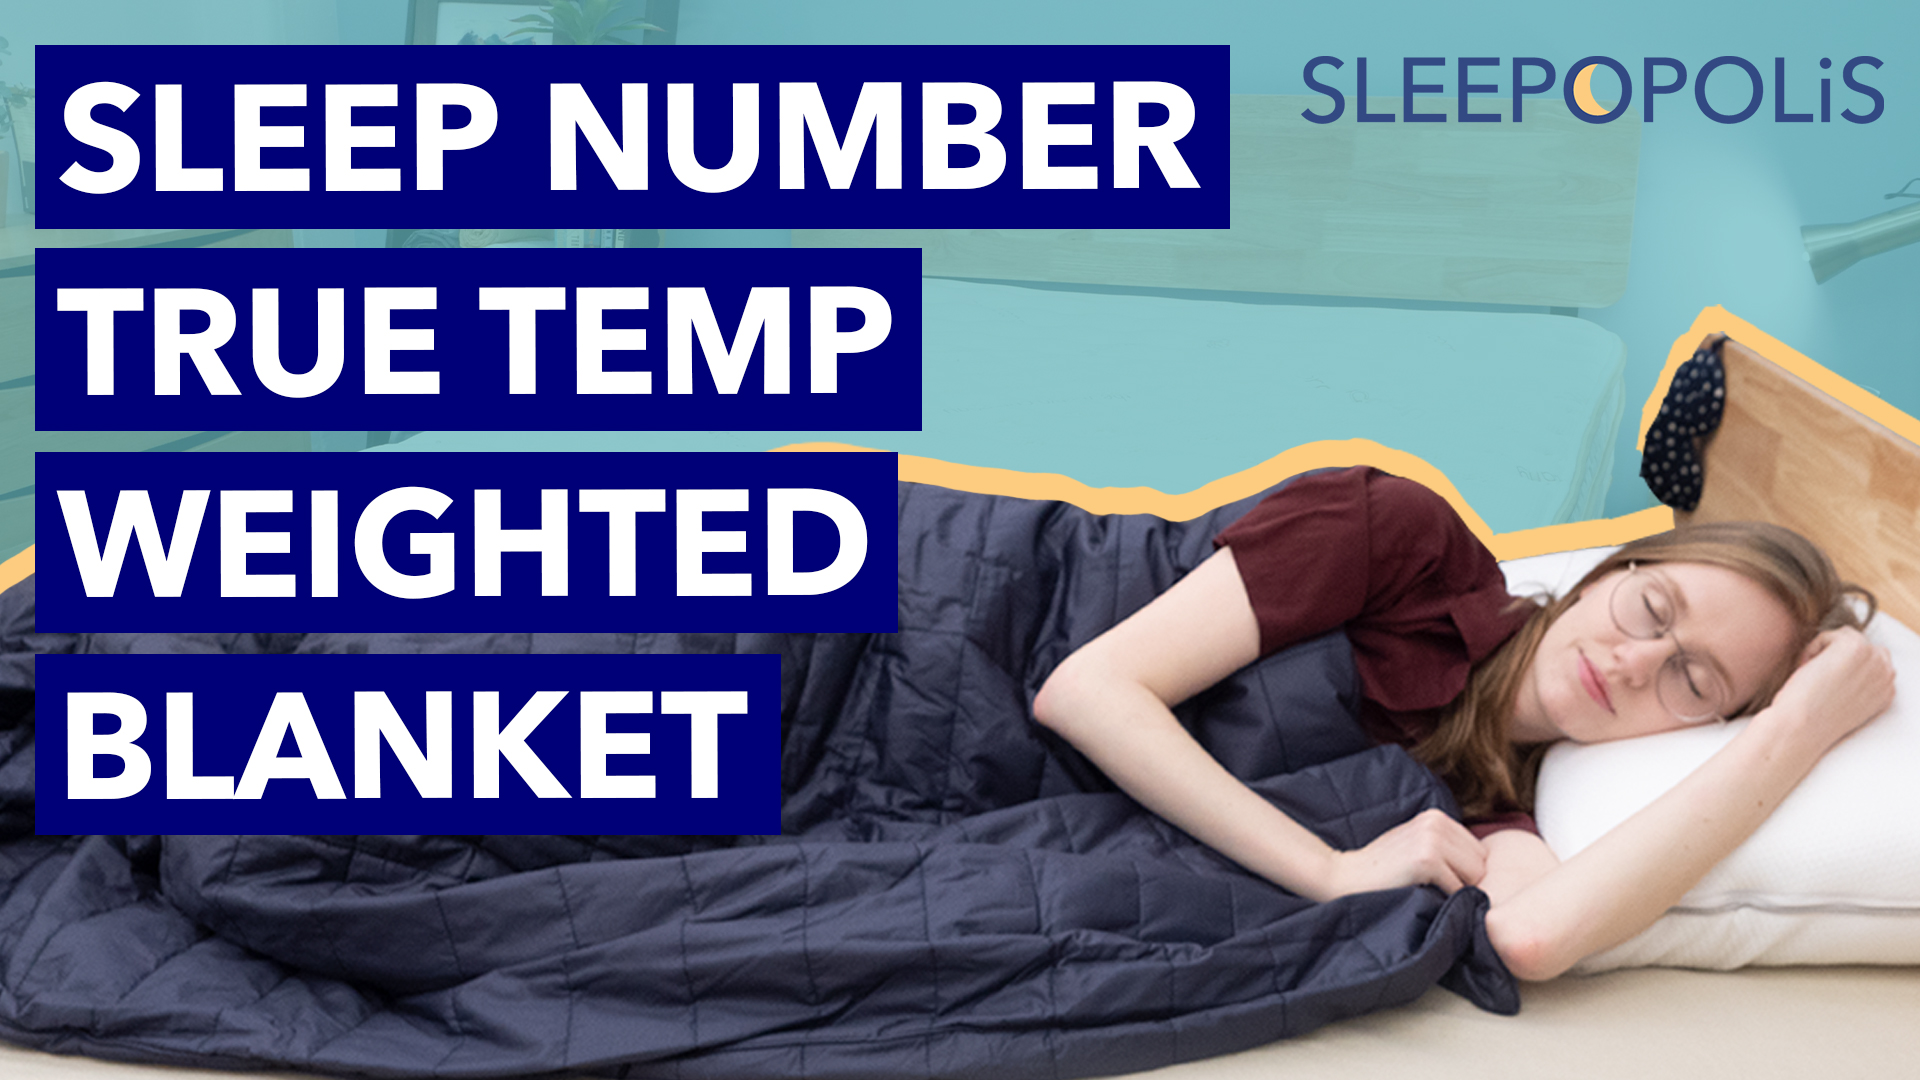 True Temp™ weighted blanket - Sleep Number